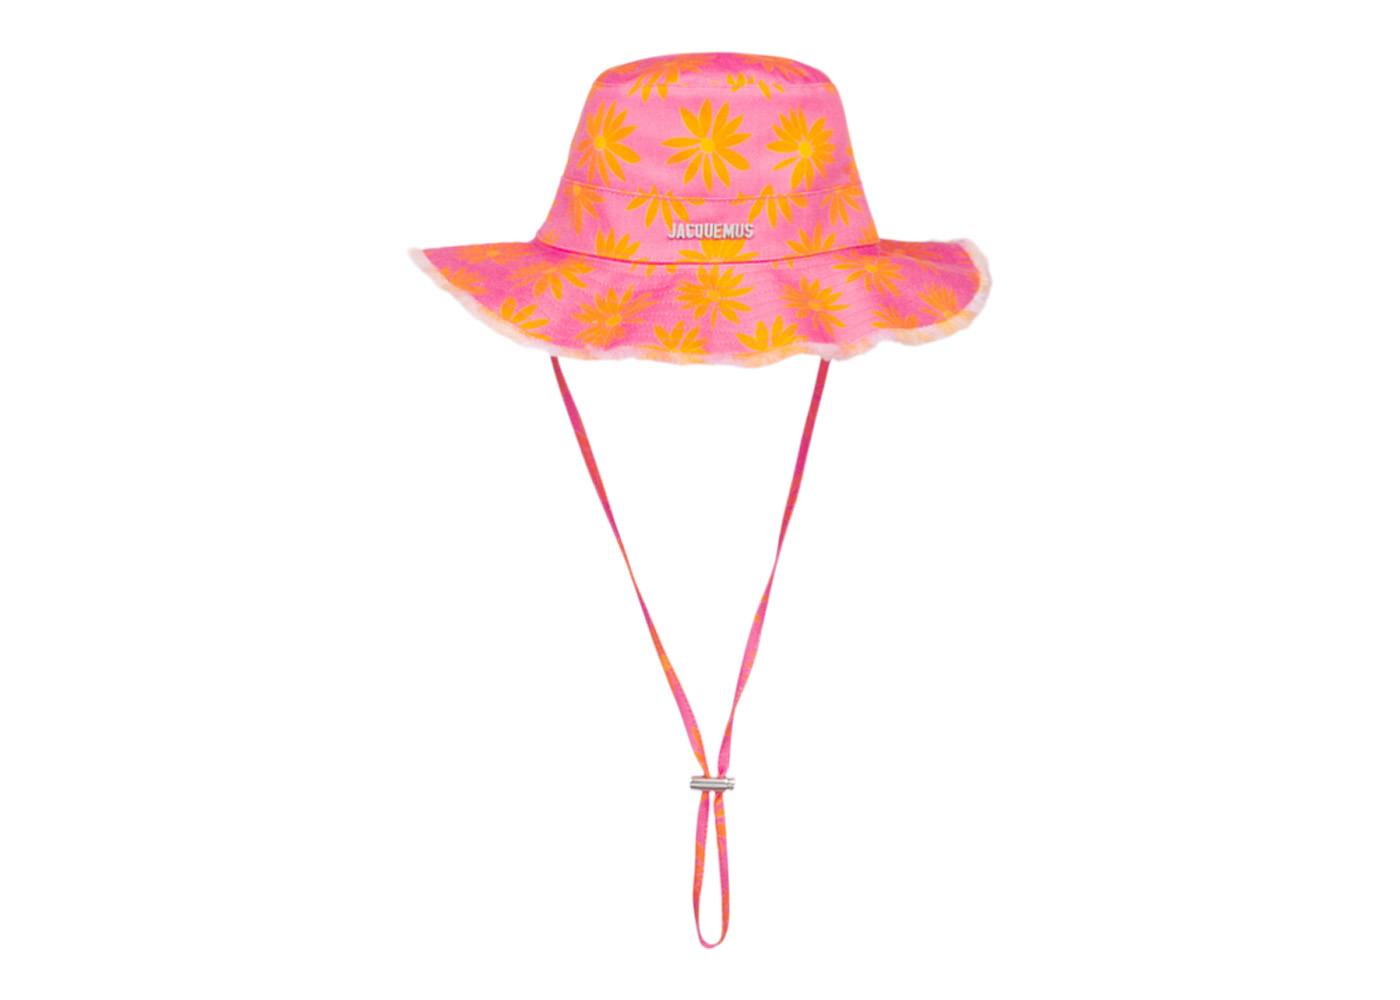 Jacquemus Le Bob Artichaut Large Brim Bucket Hat Print Orange/Pink 